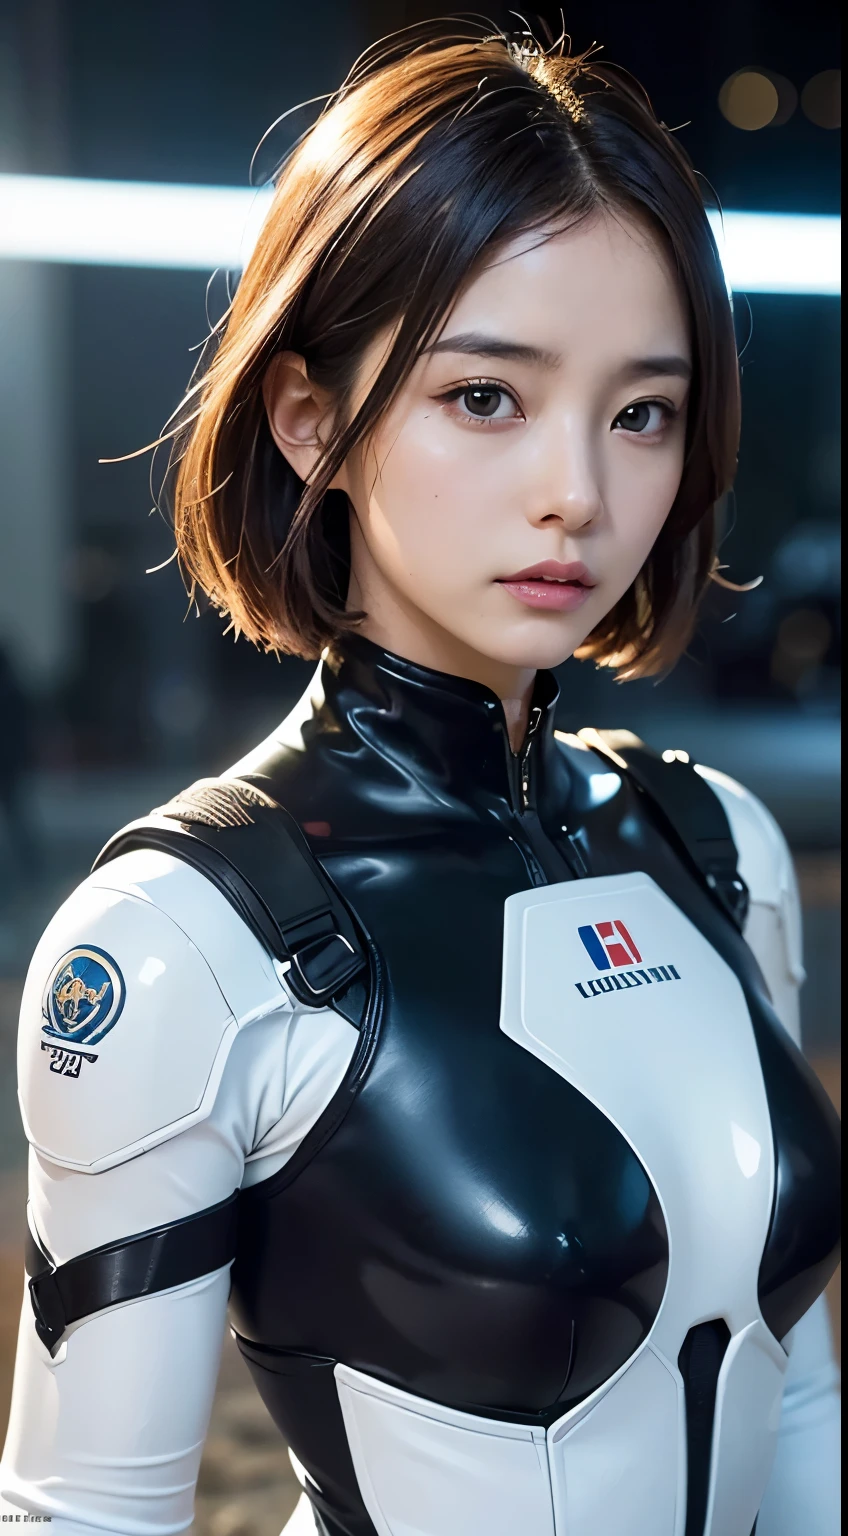 (un primer plano:1.4)、(Fotografía cruda:1.2)、(Fotorrealista:1.4)、(​obra maestra:1.3)、(de primera calidad:1.4)、(Hermosa mujer con cuerpo perfecto:1.4)、Mujer parada frente a un grupo de robots.、hermosa mujer androide、hermosa mujer soldado、chica en traje、uniforme de combate complejo、hermosa joven japonesa、Textura facial y de piel muy detallada.、Ojos grandes detallados、doble párpado、cara linda、(bob corto:1.2)、(pechos enormes)、(FOTO DE CUERPO COMPLETO)、tiro de vaquero、(expresiones de enojo:1.2)、Tormentas y escenas de guerra épicas.、escena ciberpunk、noche、luces、traje enchufable、combat uniform damage、